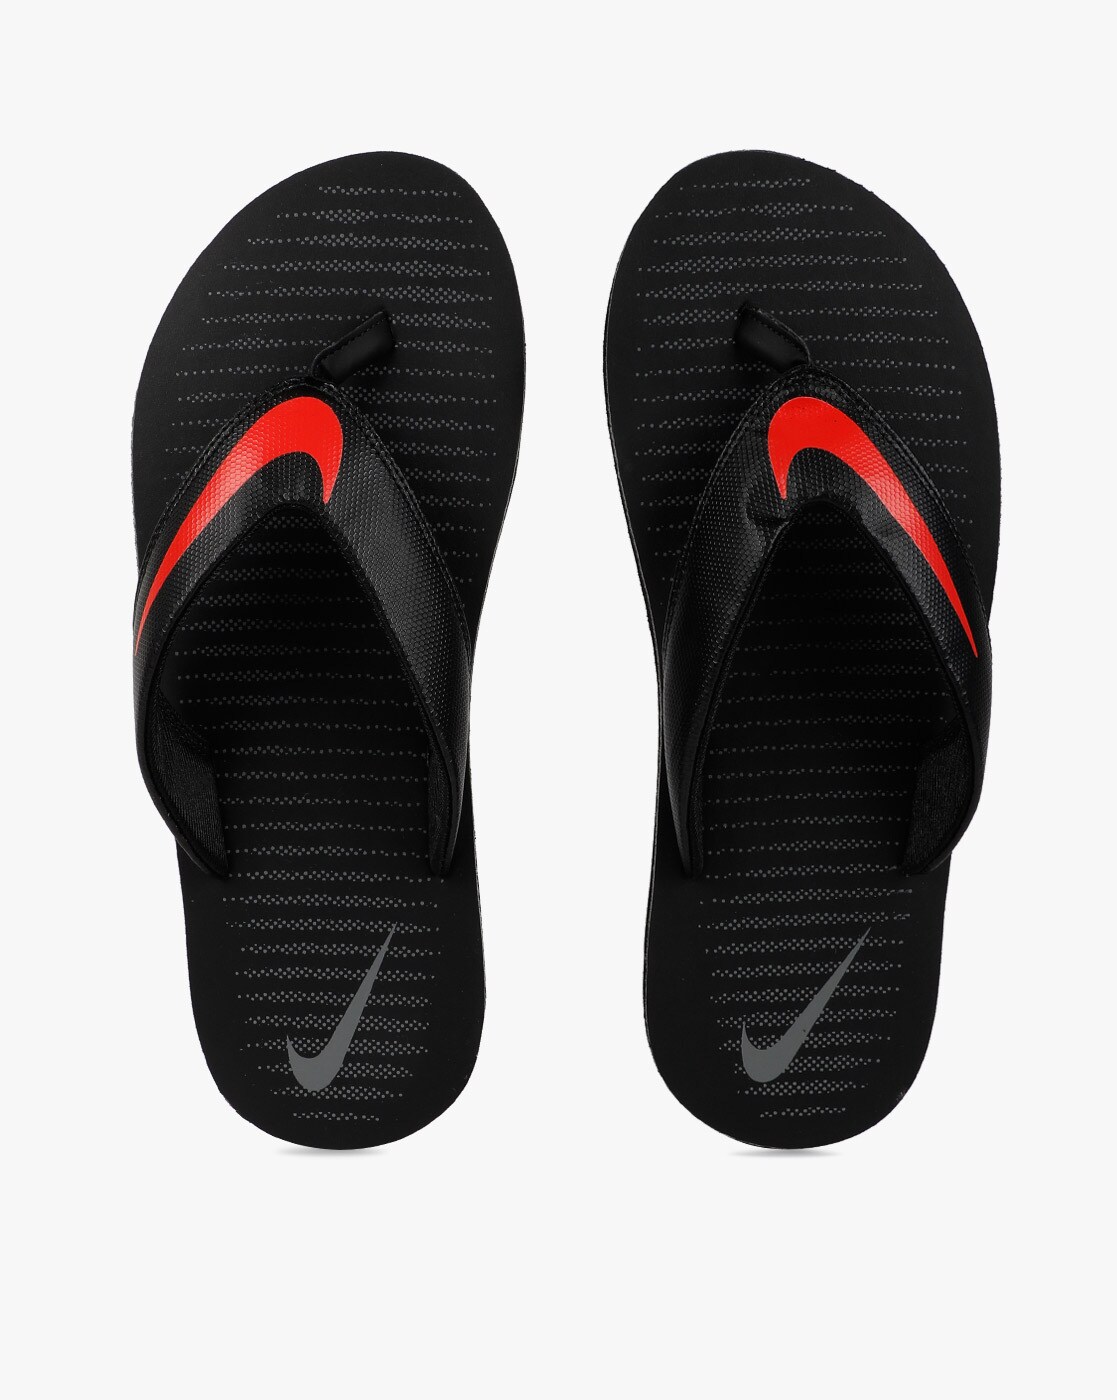 Nike Men's Flip Flop Thong Slippers Sandals Blue White Slip On Size 6 US |  eBay